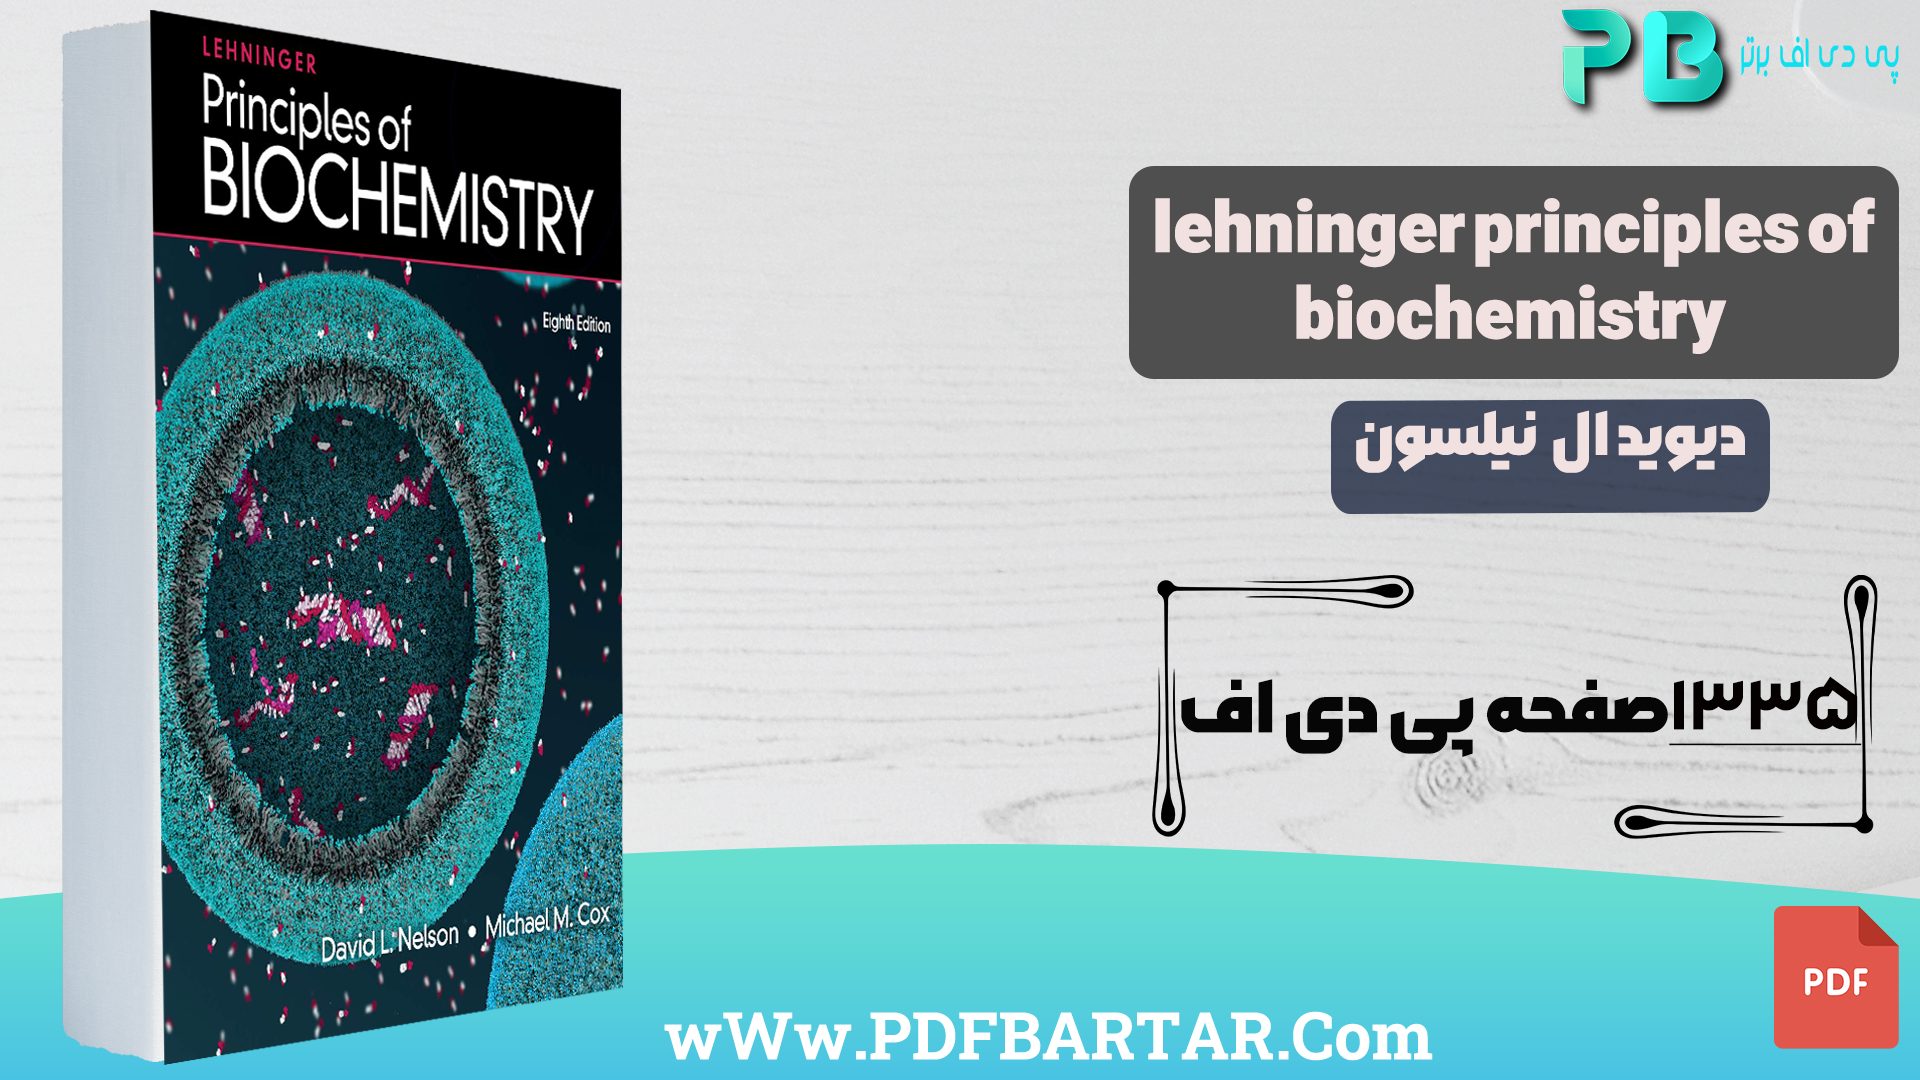 دانلود پی دی اف کتاب Lehninger Principles Of Biochemistry دیوید ال نیلسون PDF - پی دی اف برتر